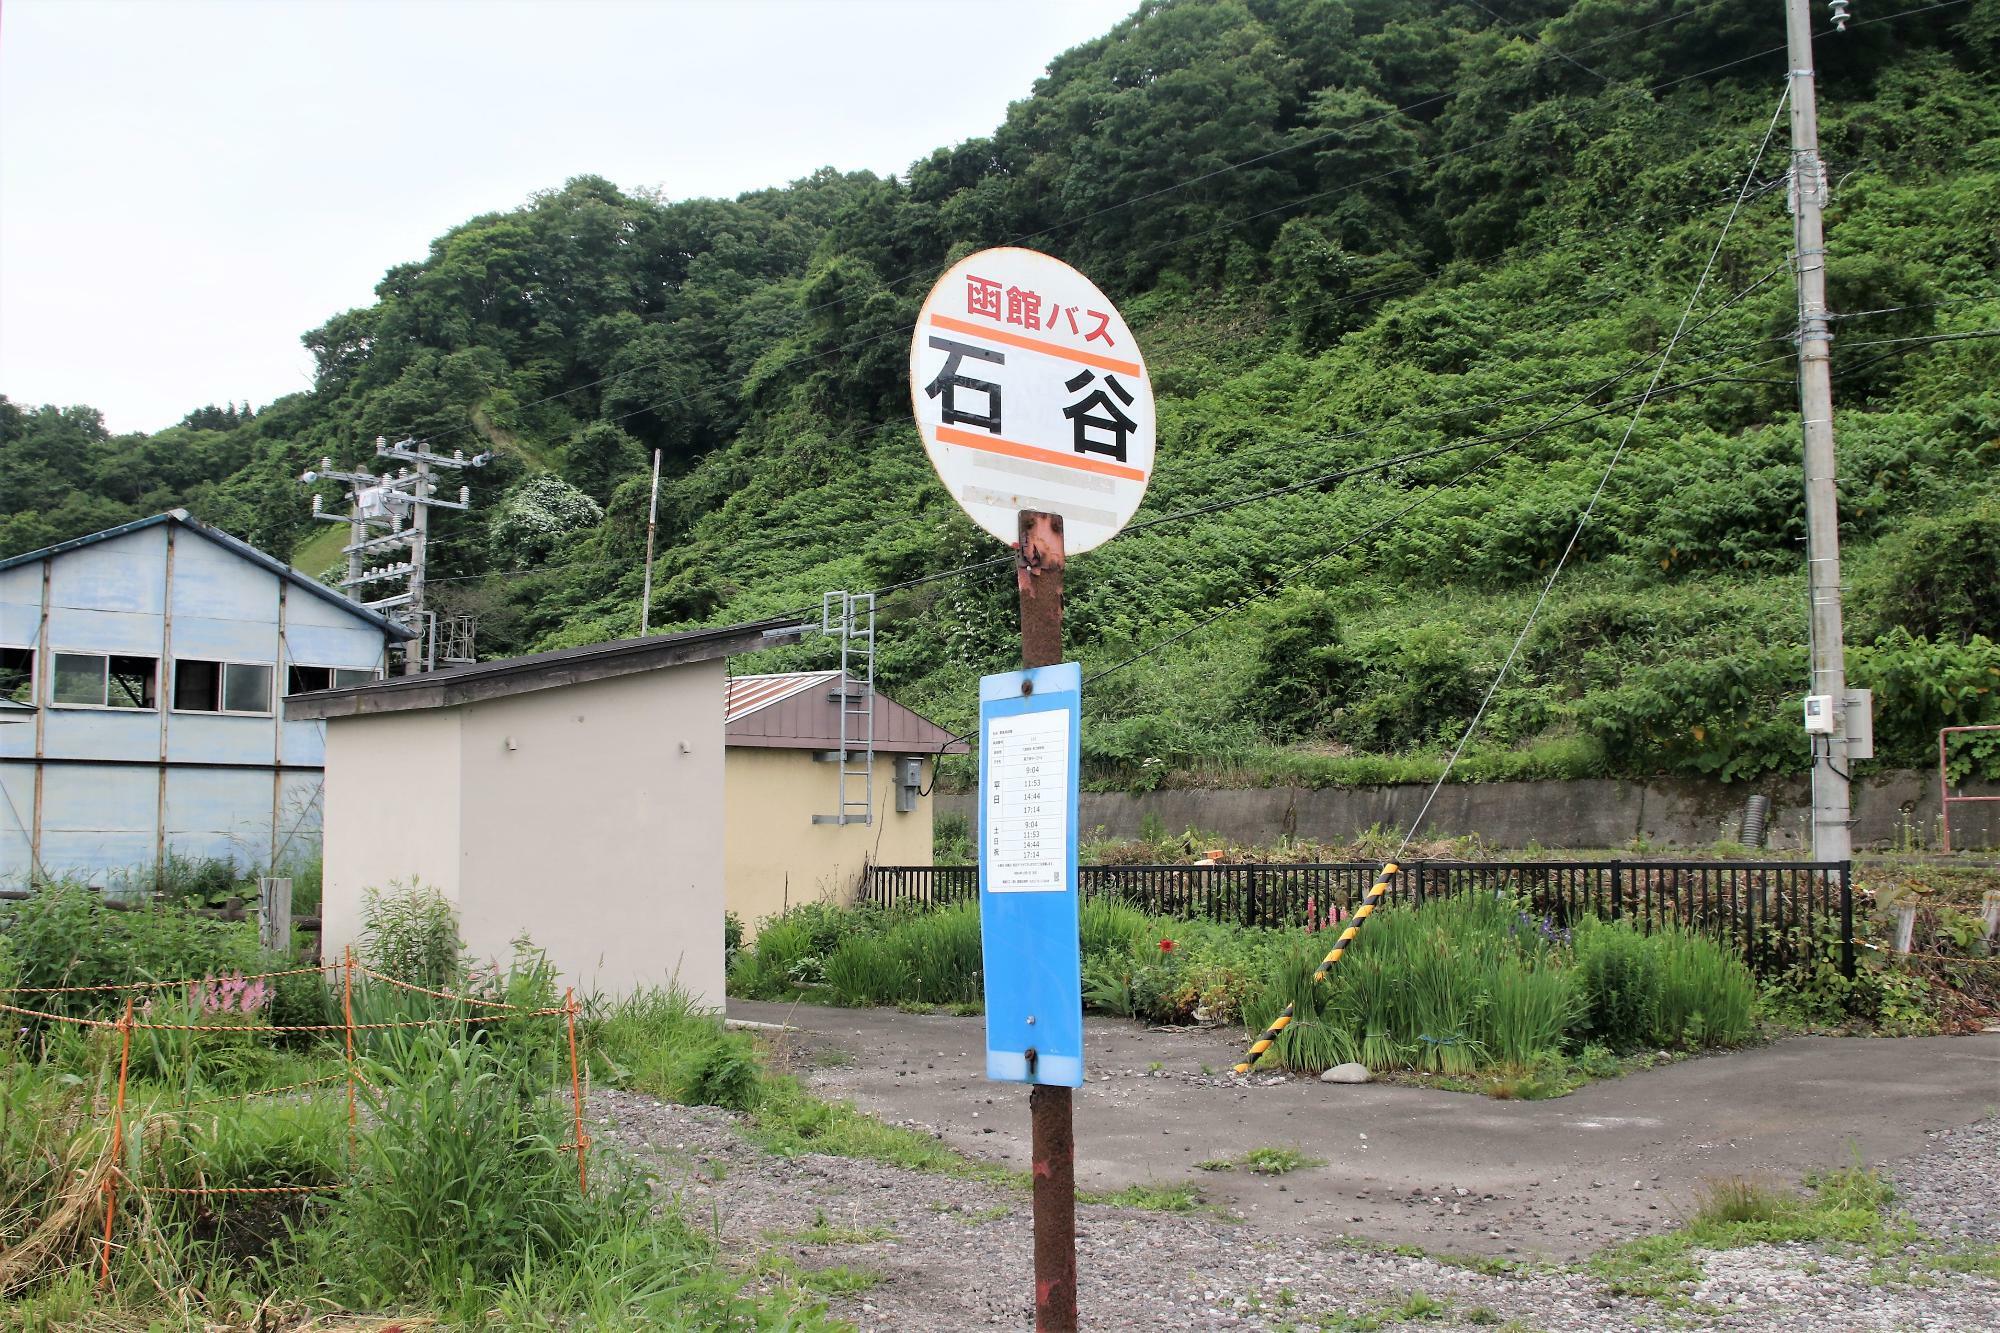 信号場そばには函館バス「石谷」バス停